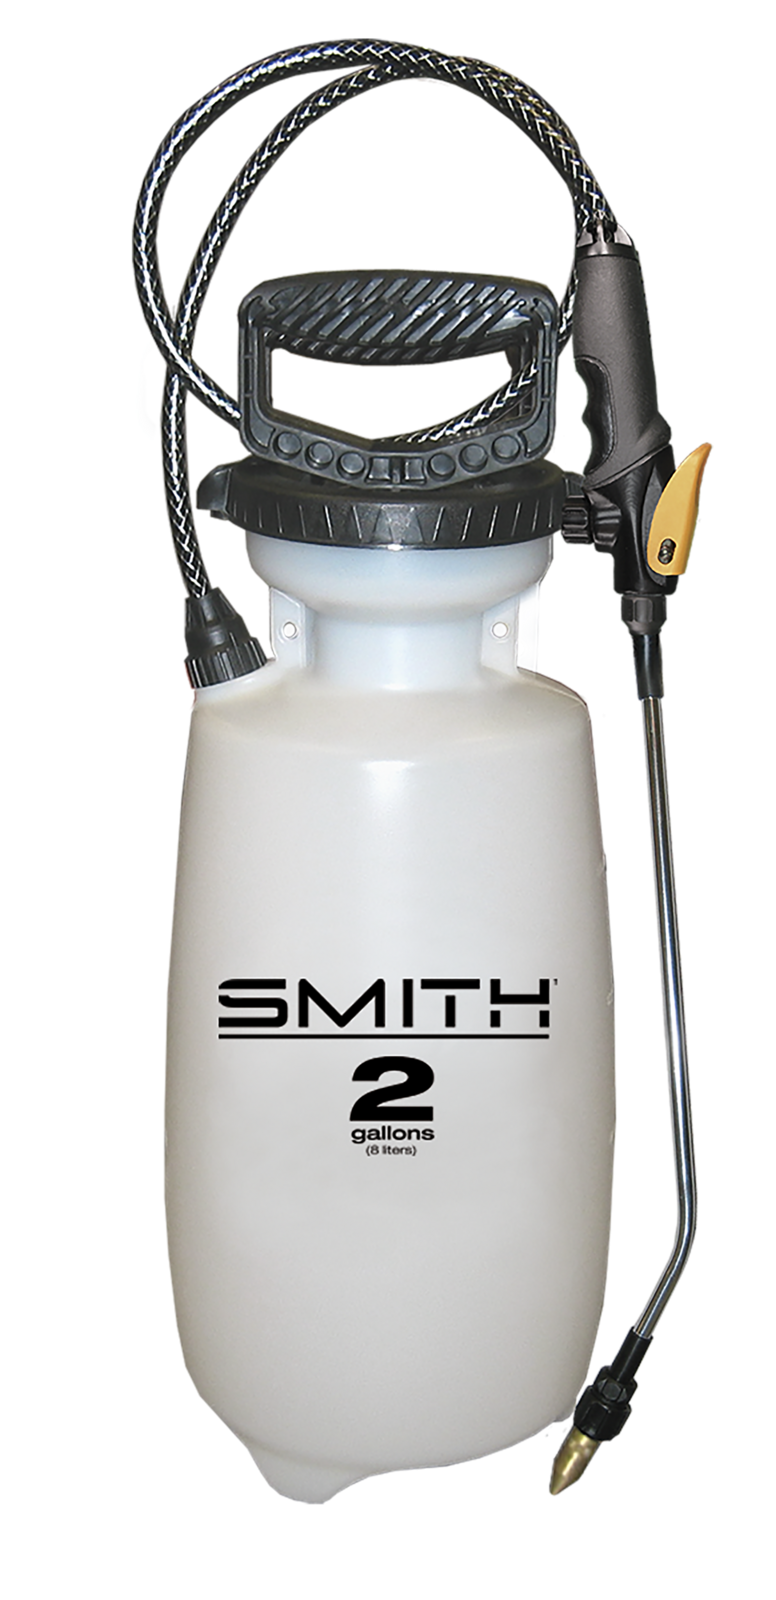 Smith 2 Gallon Sprayer